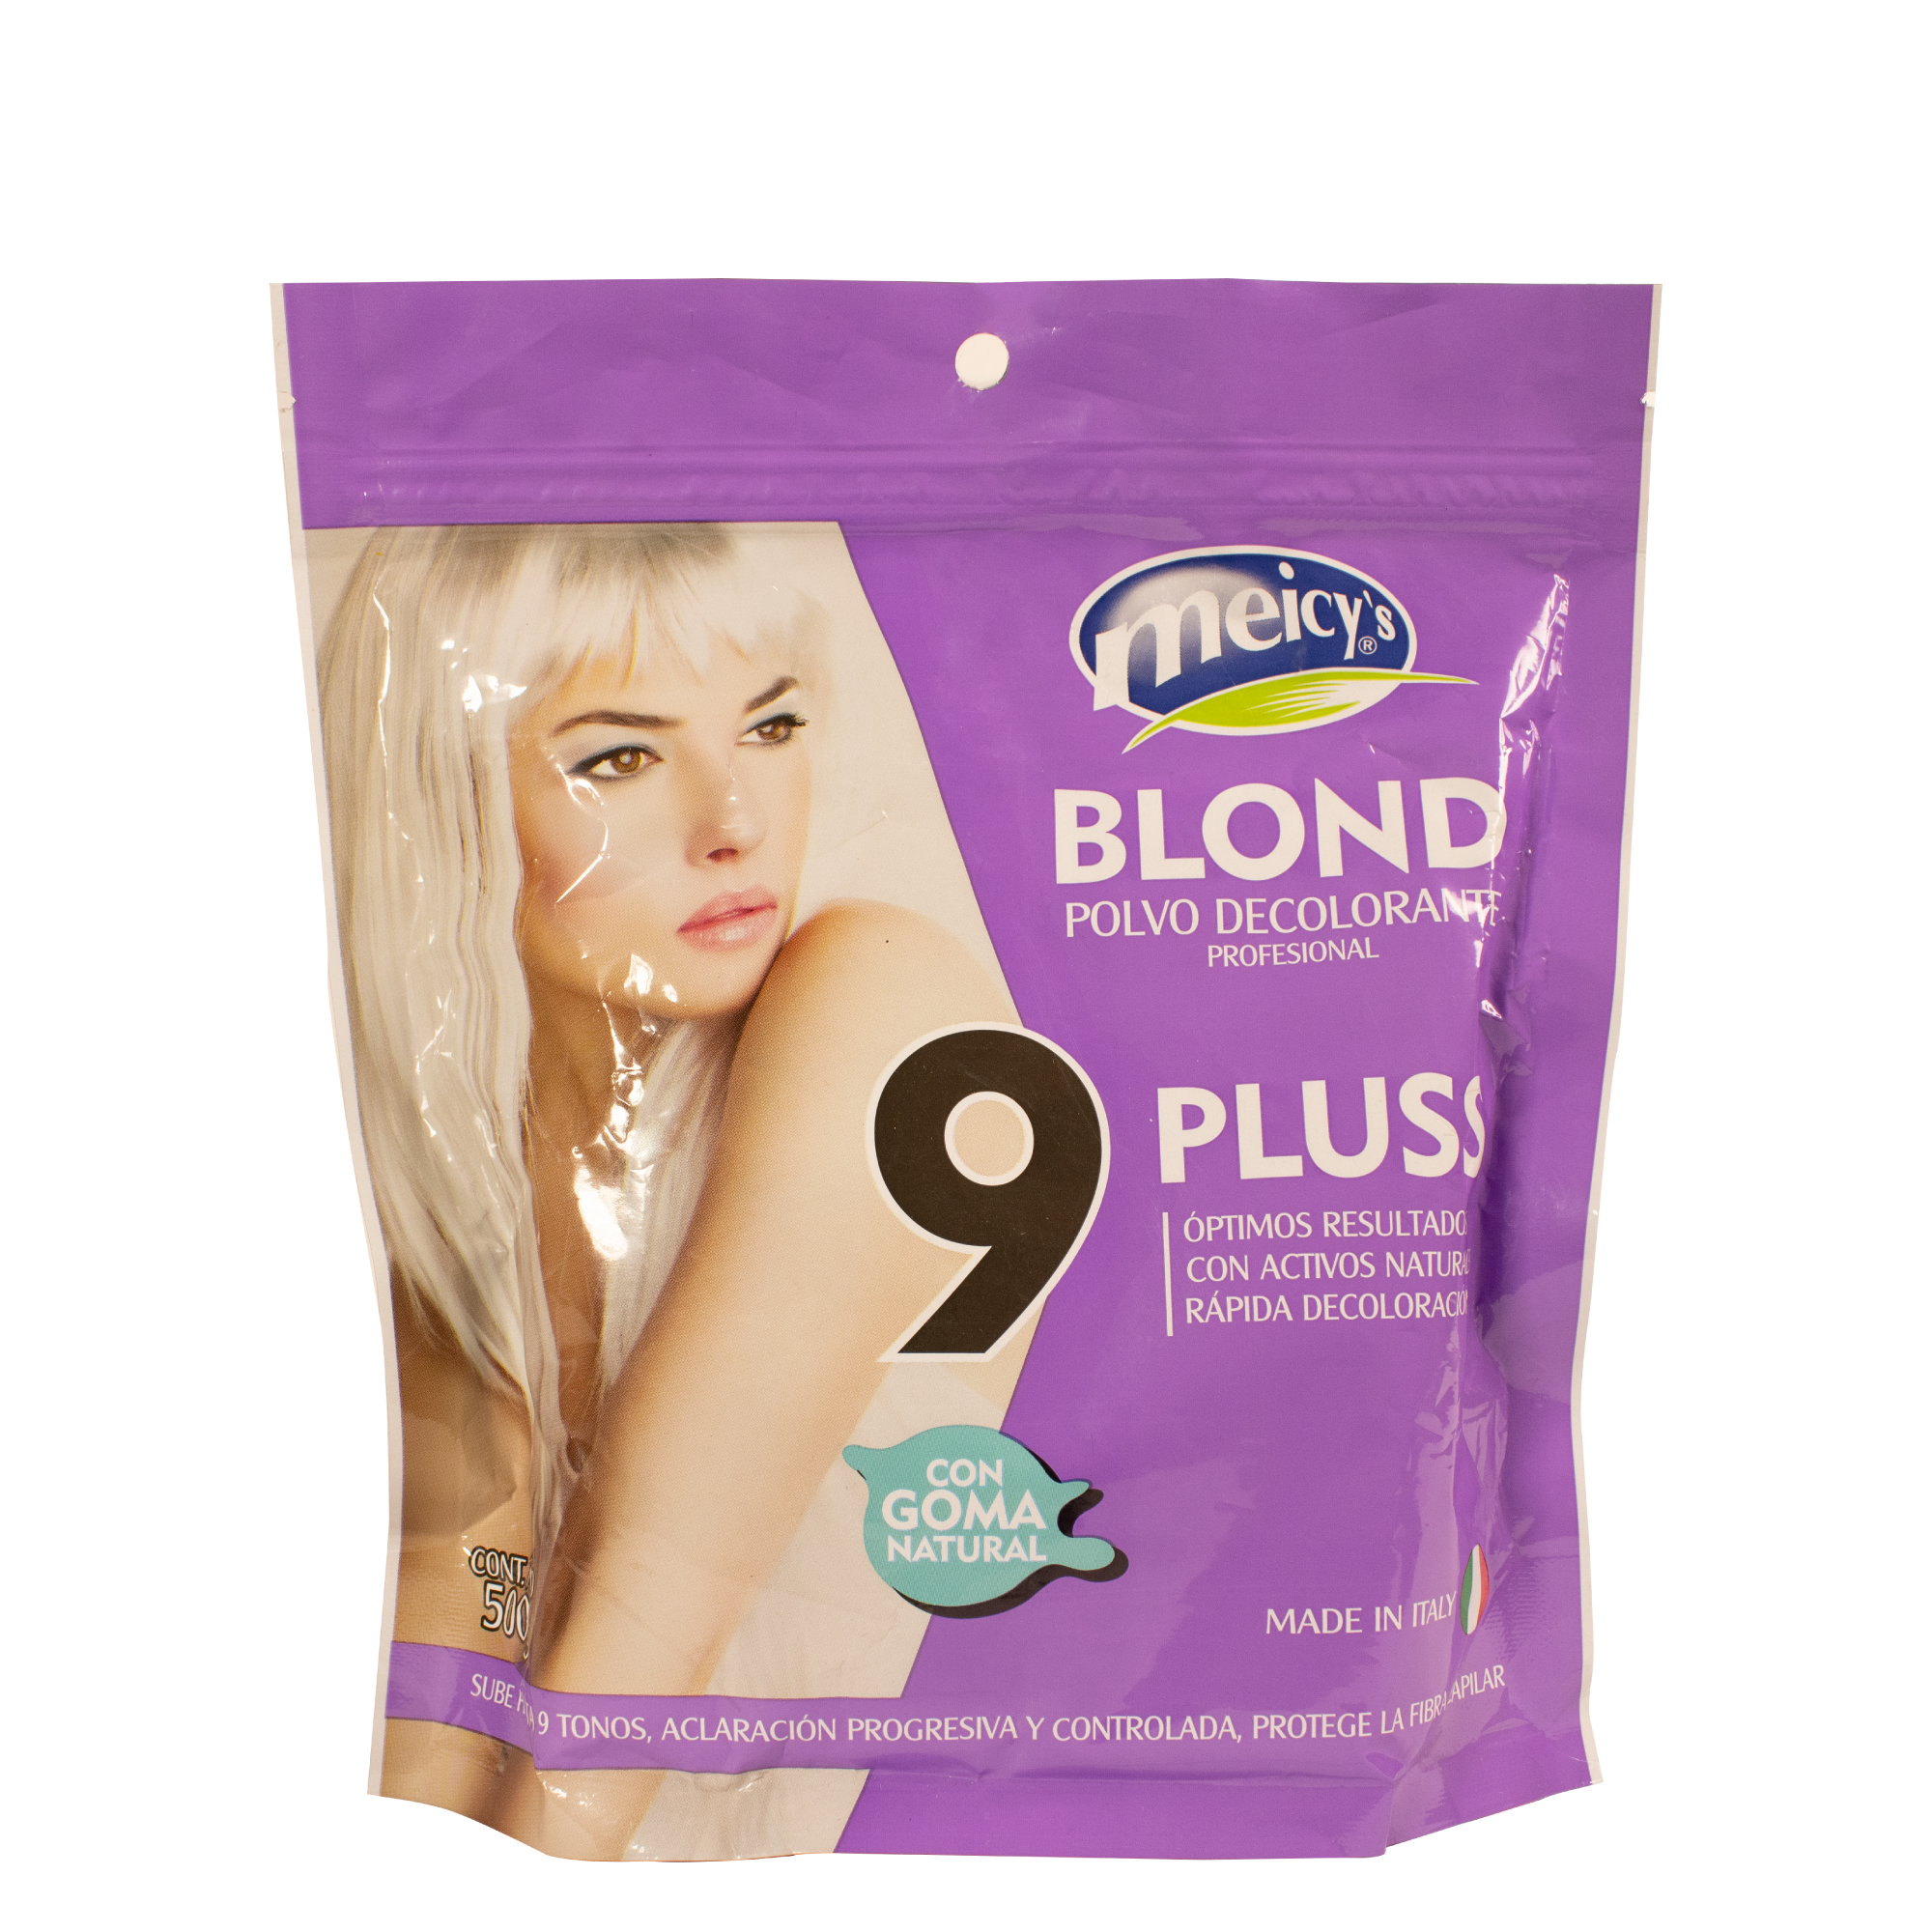 Meicys Decolorante Blond Pluss 500g Meicys